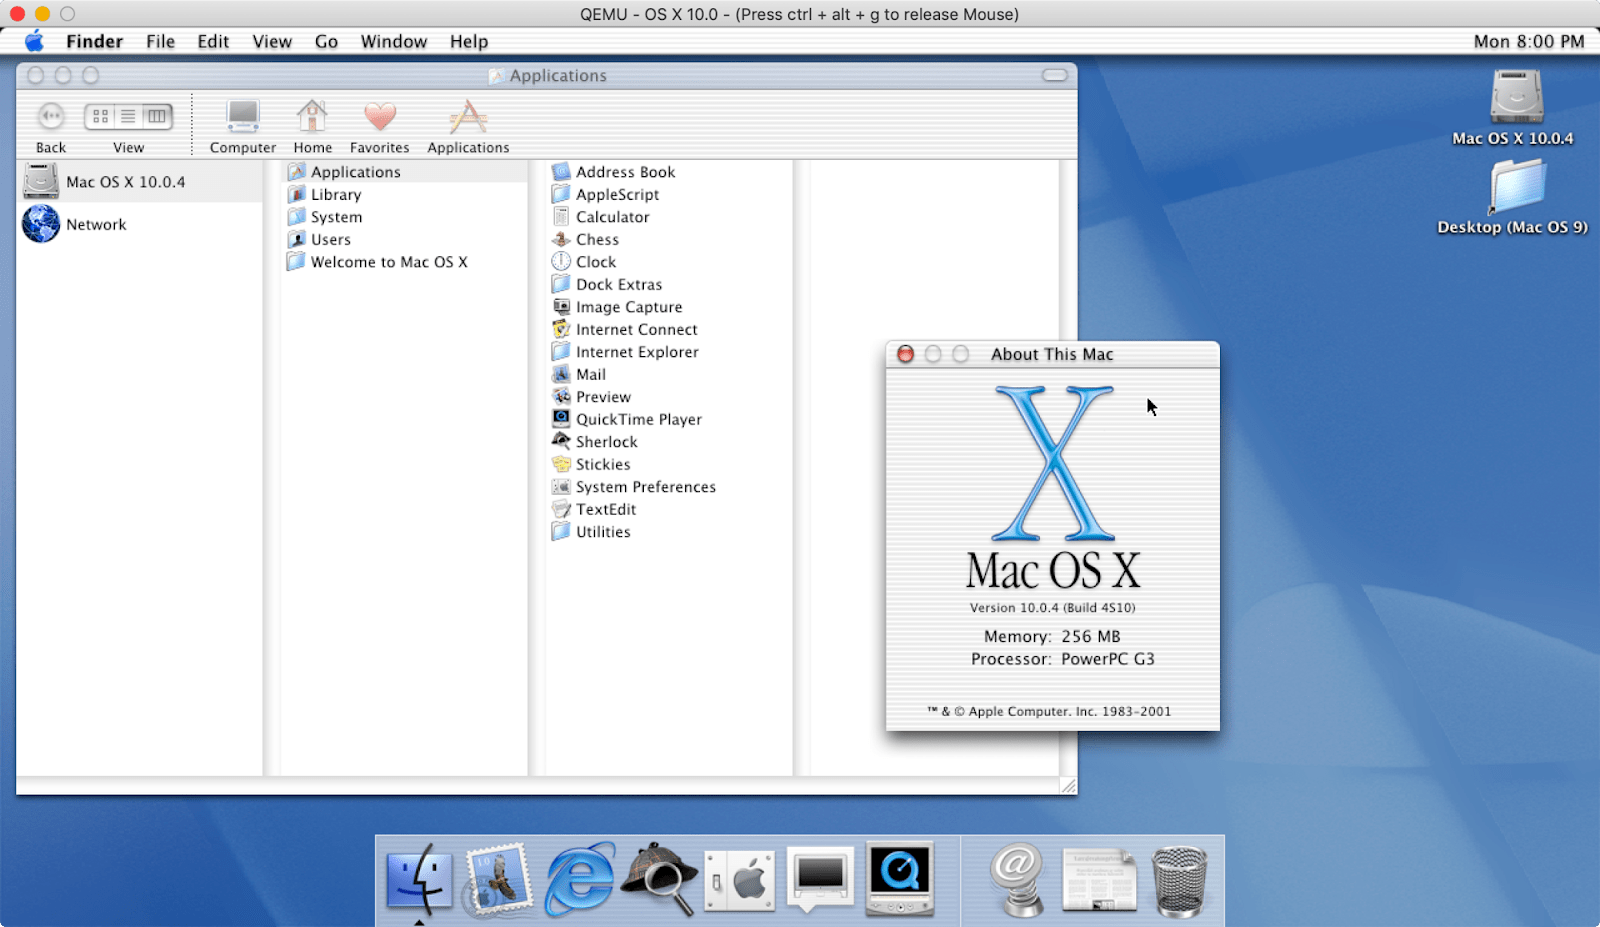 2001 Mac OS X Cheetah